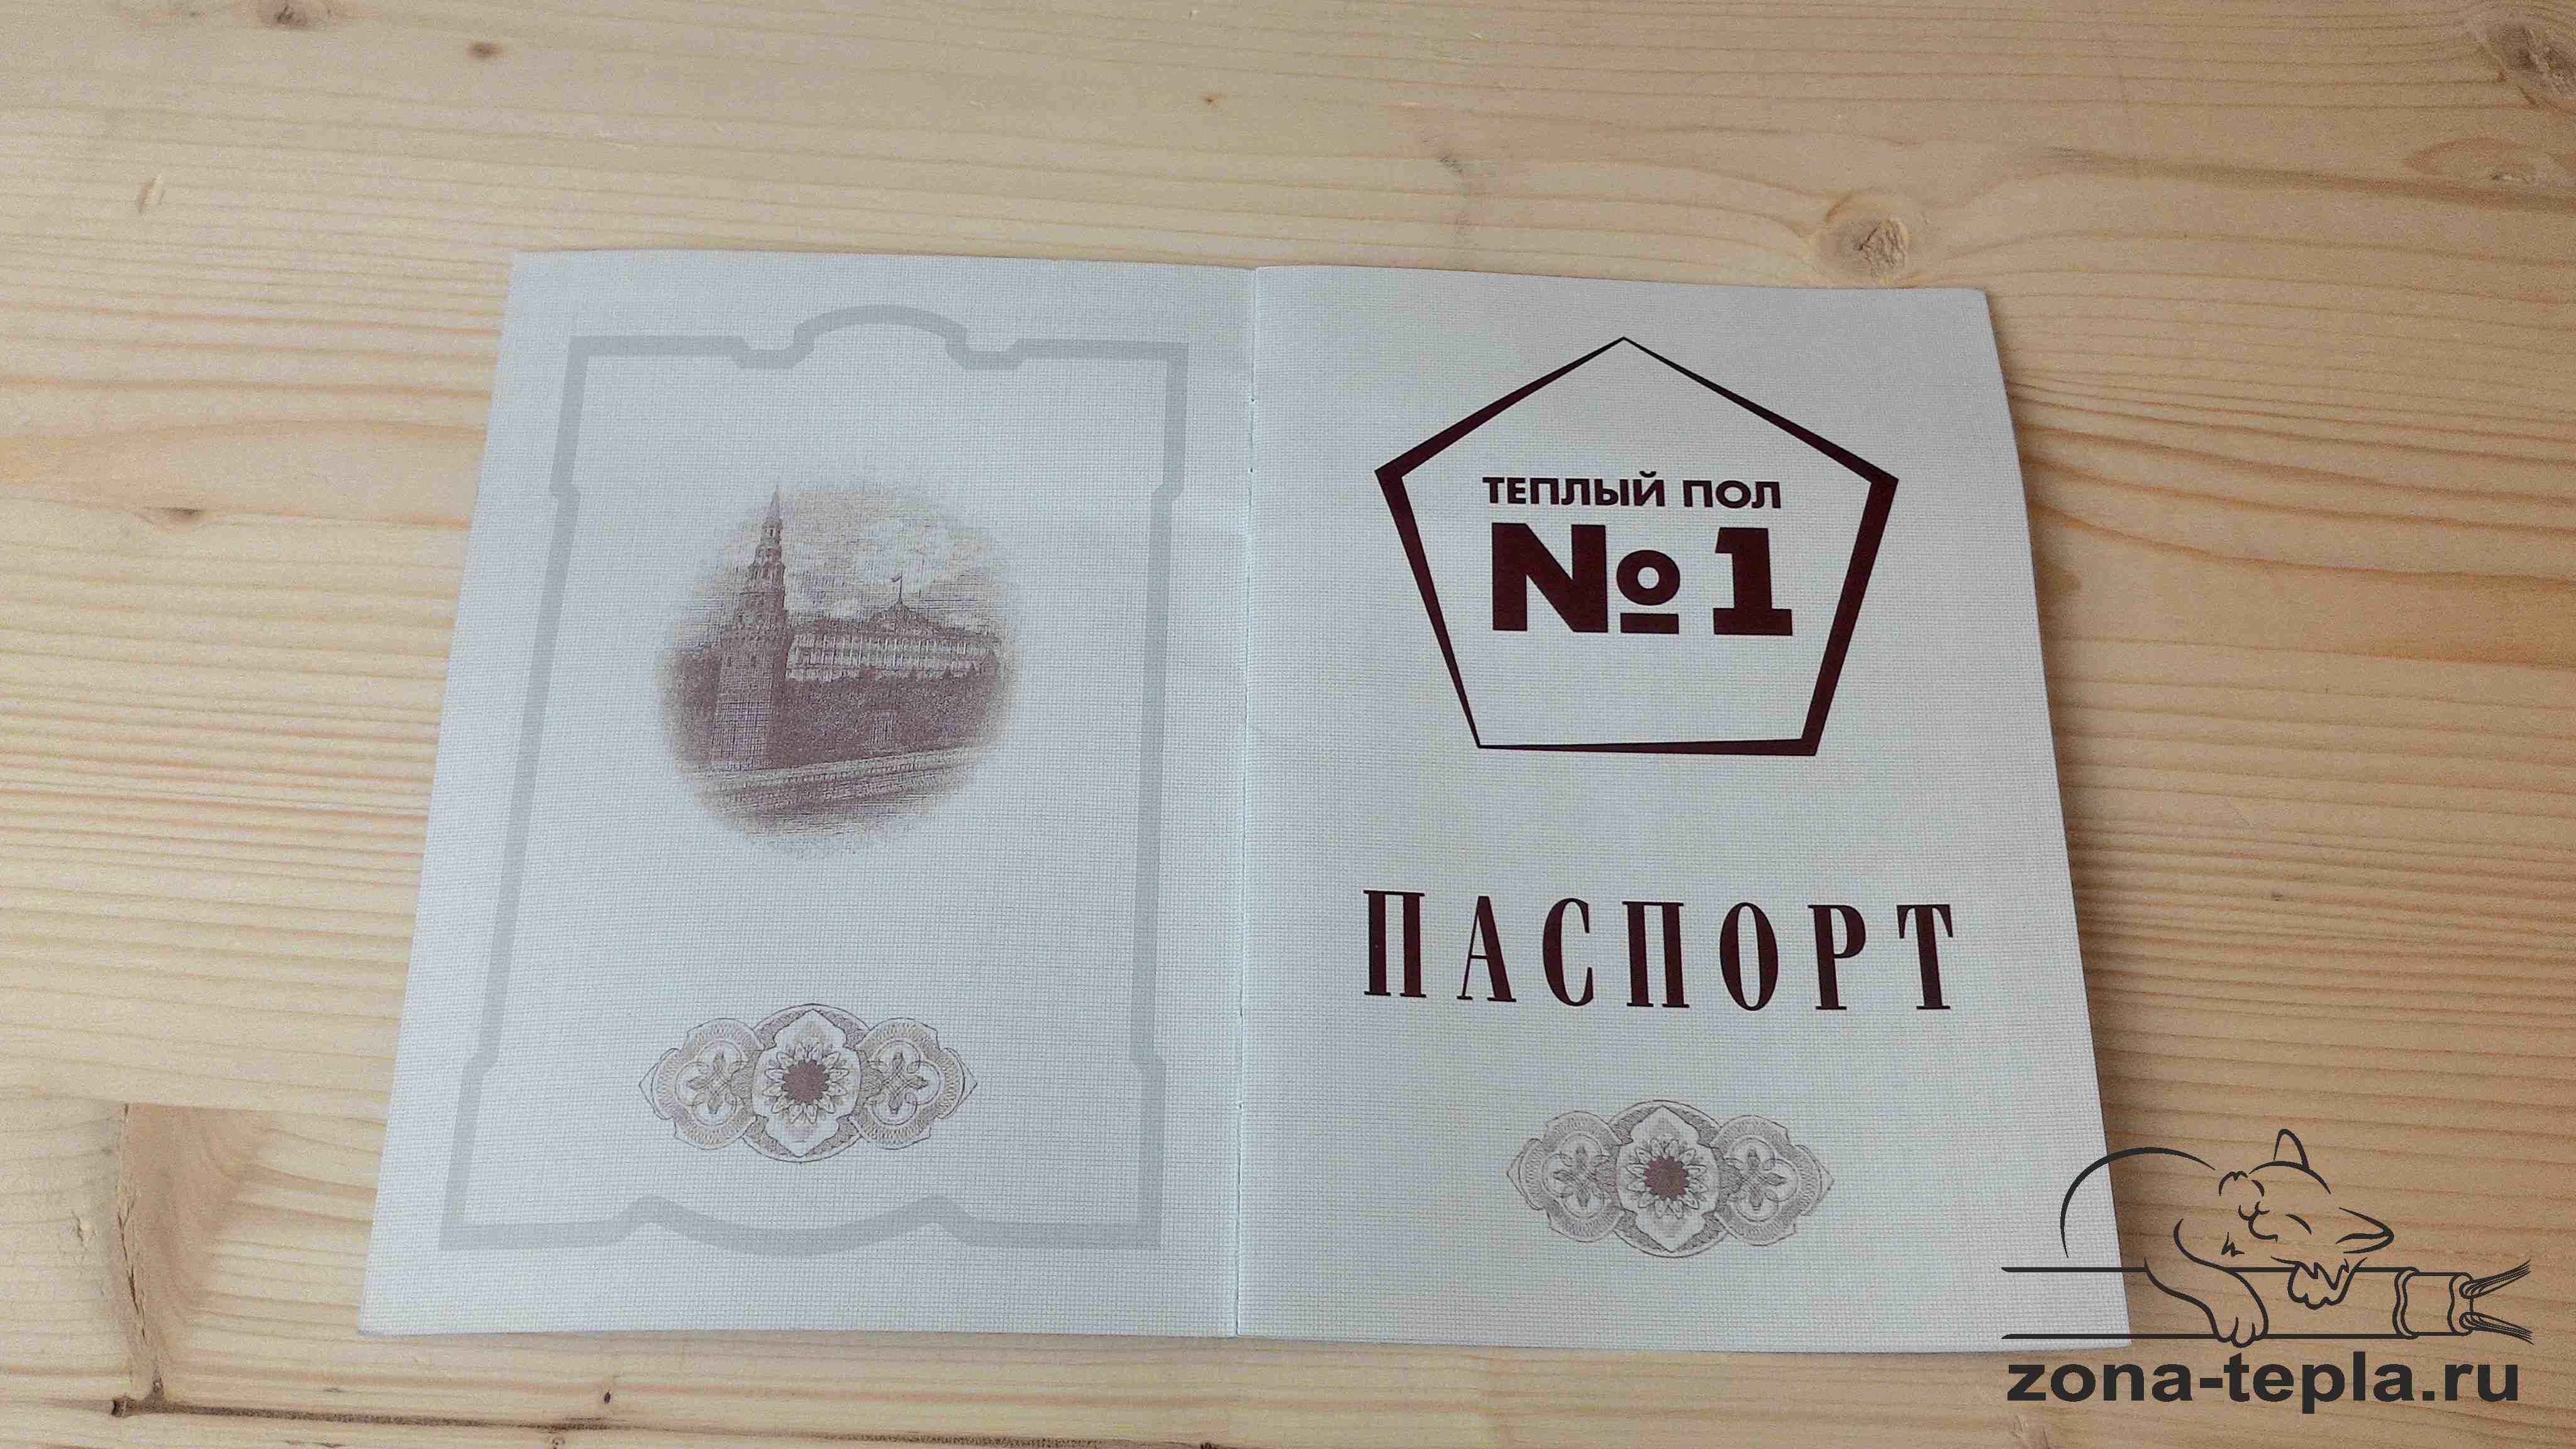 Теплый пол №1 - паспорт изделия